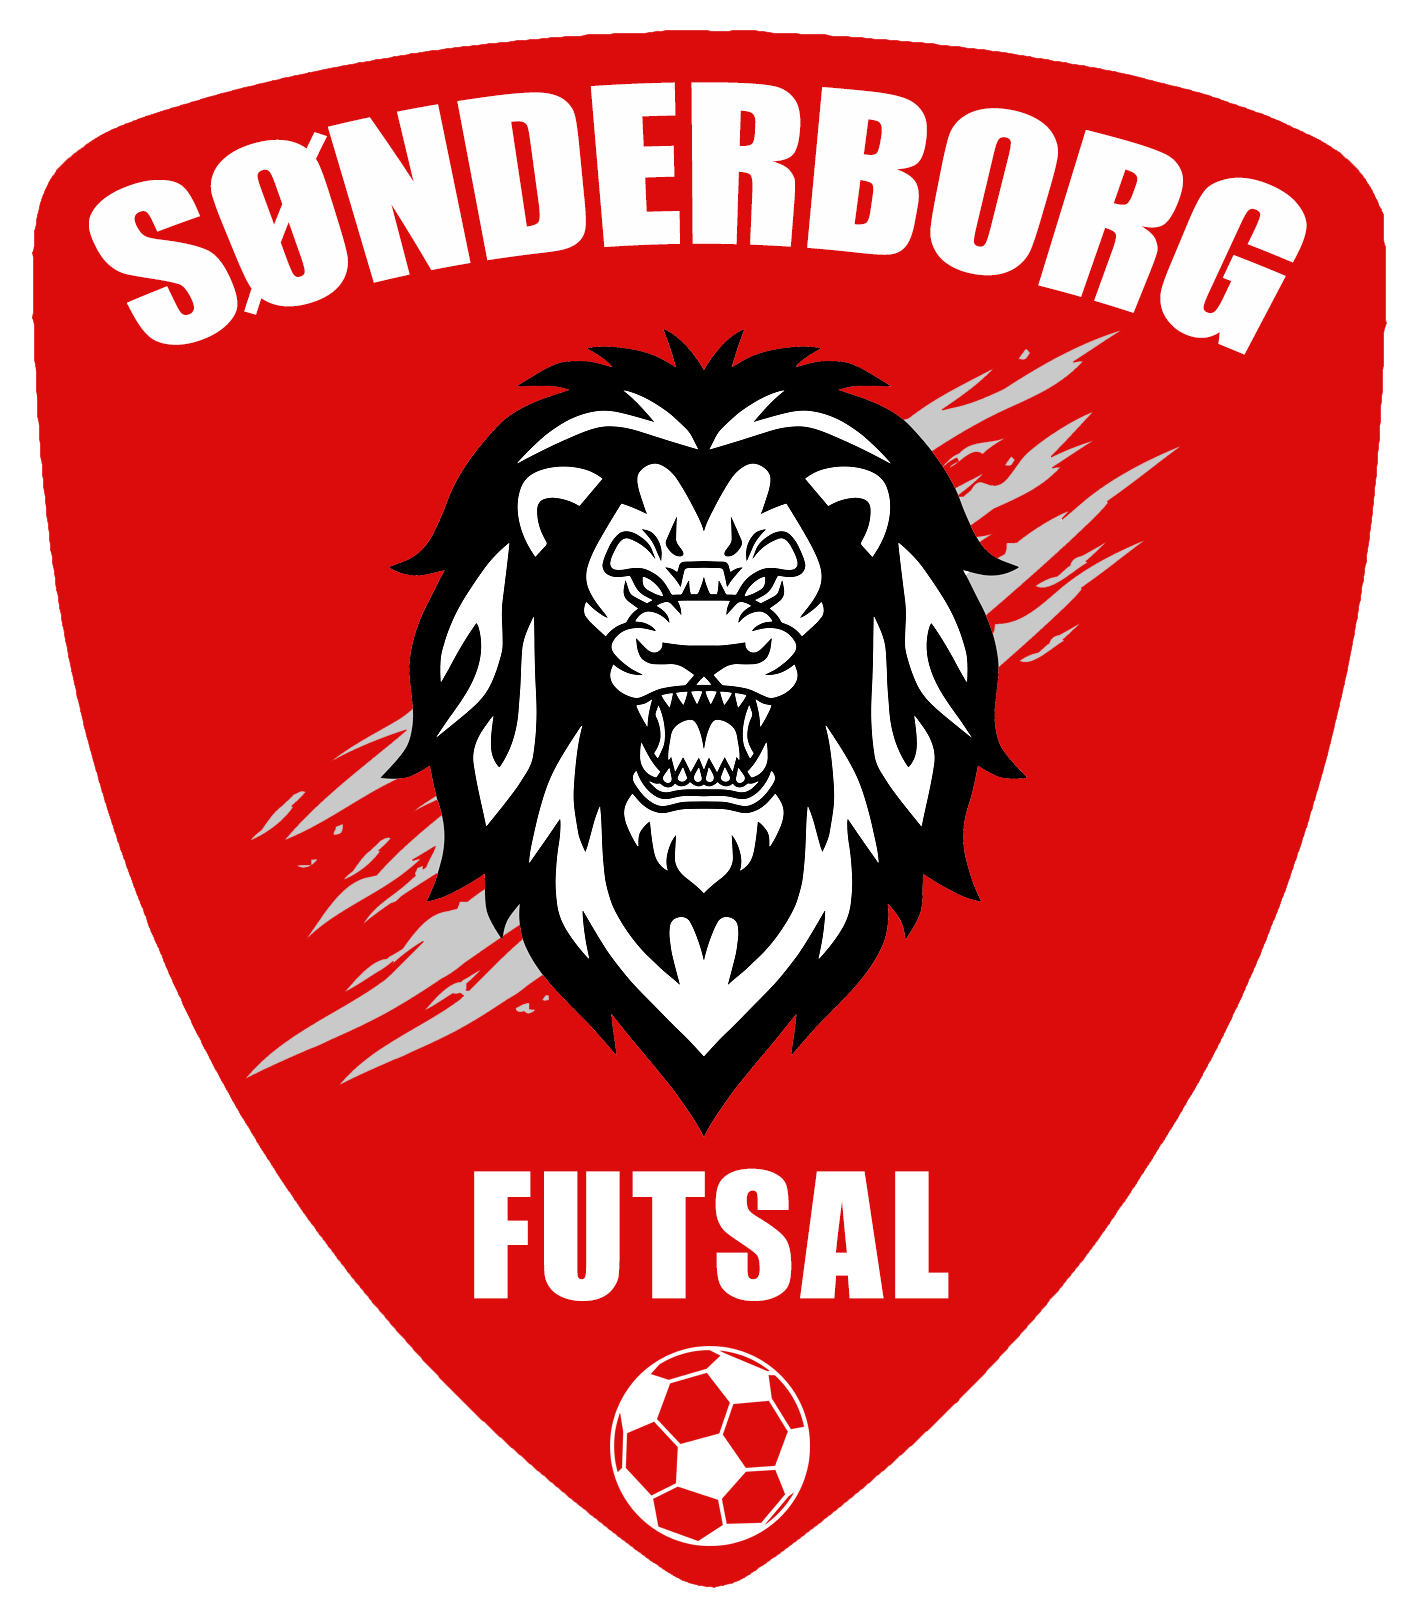 Sønderborg Futsal - logo